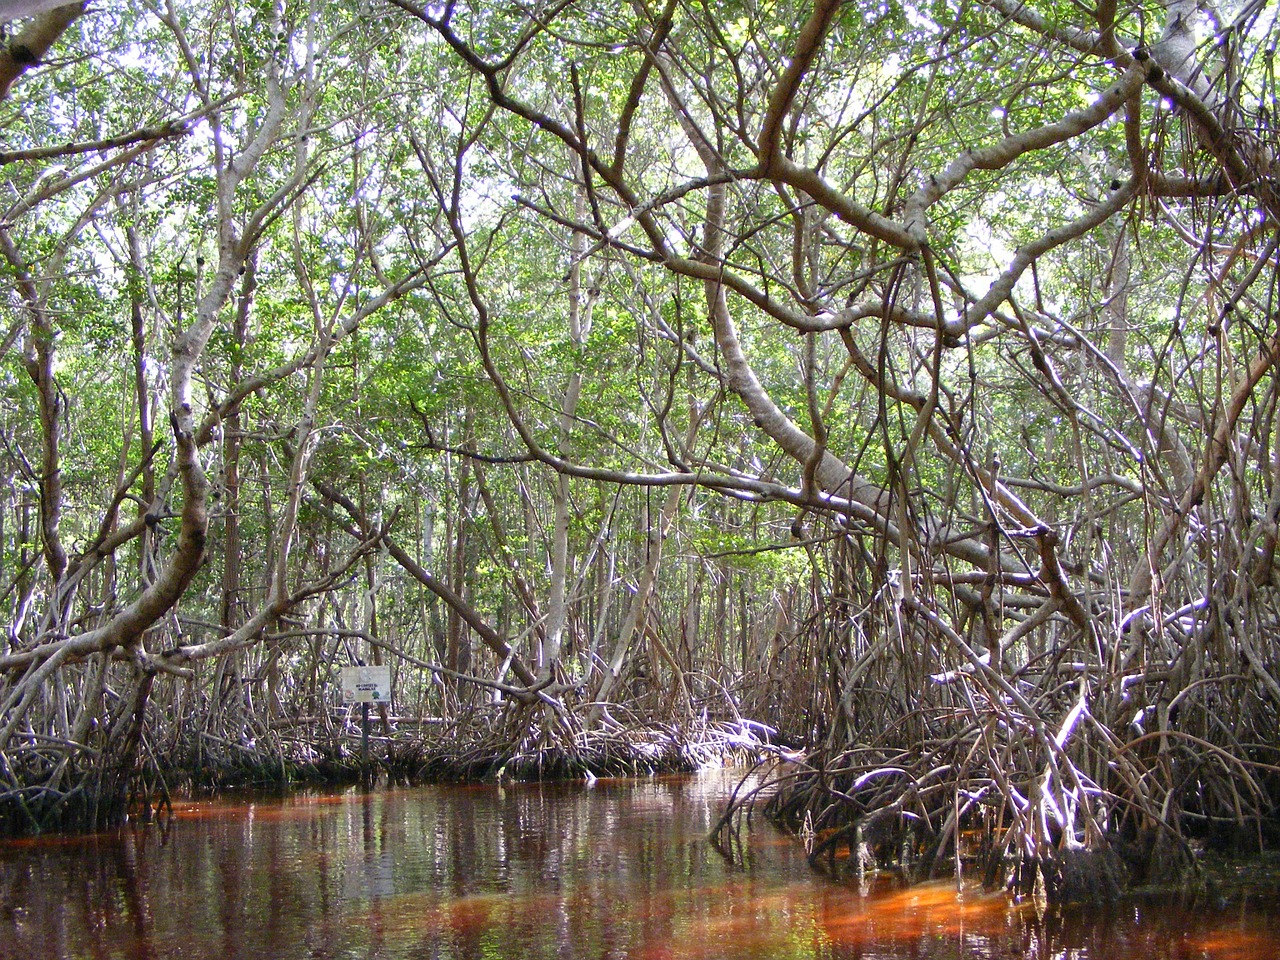 Bosques de mangle, aliados clave para hacer frente al cambio climático